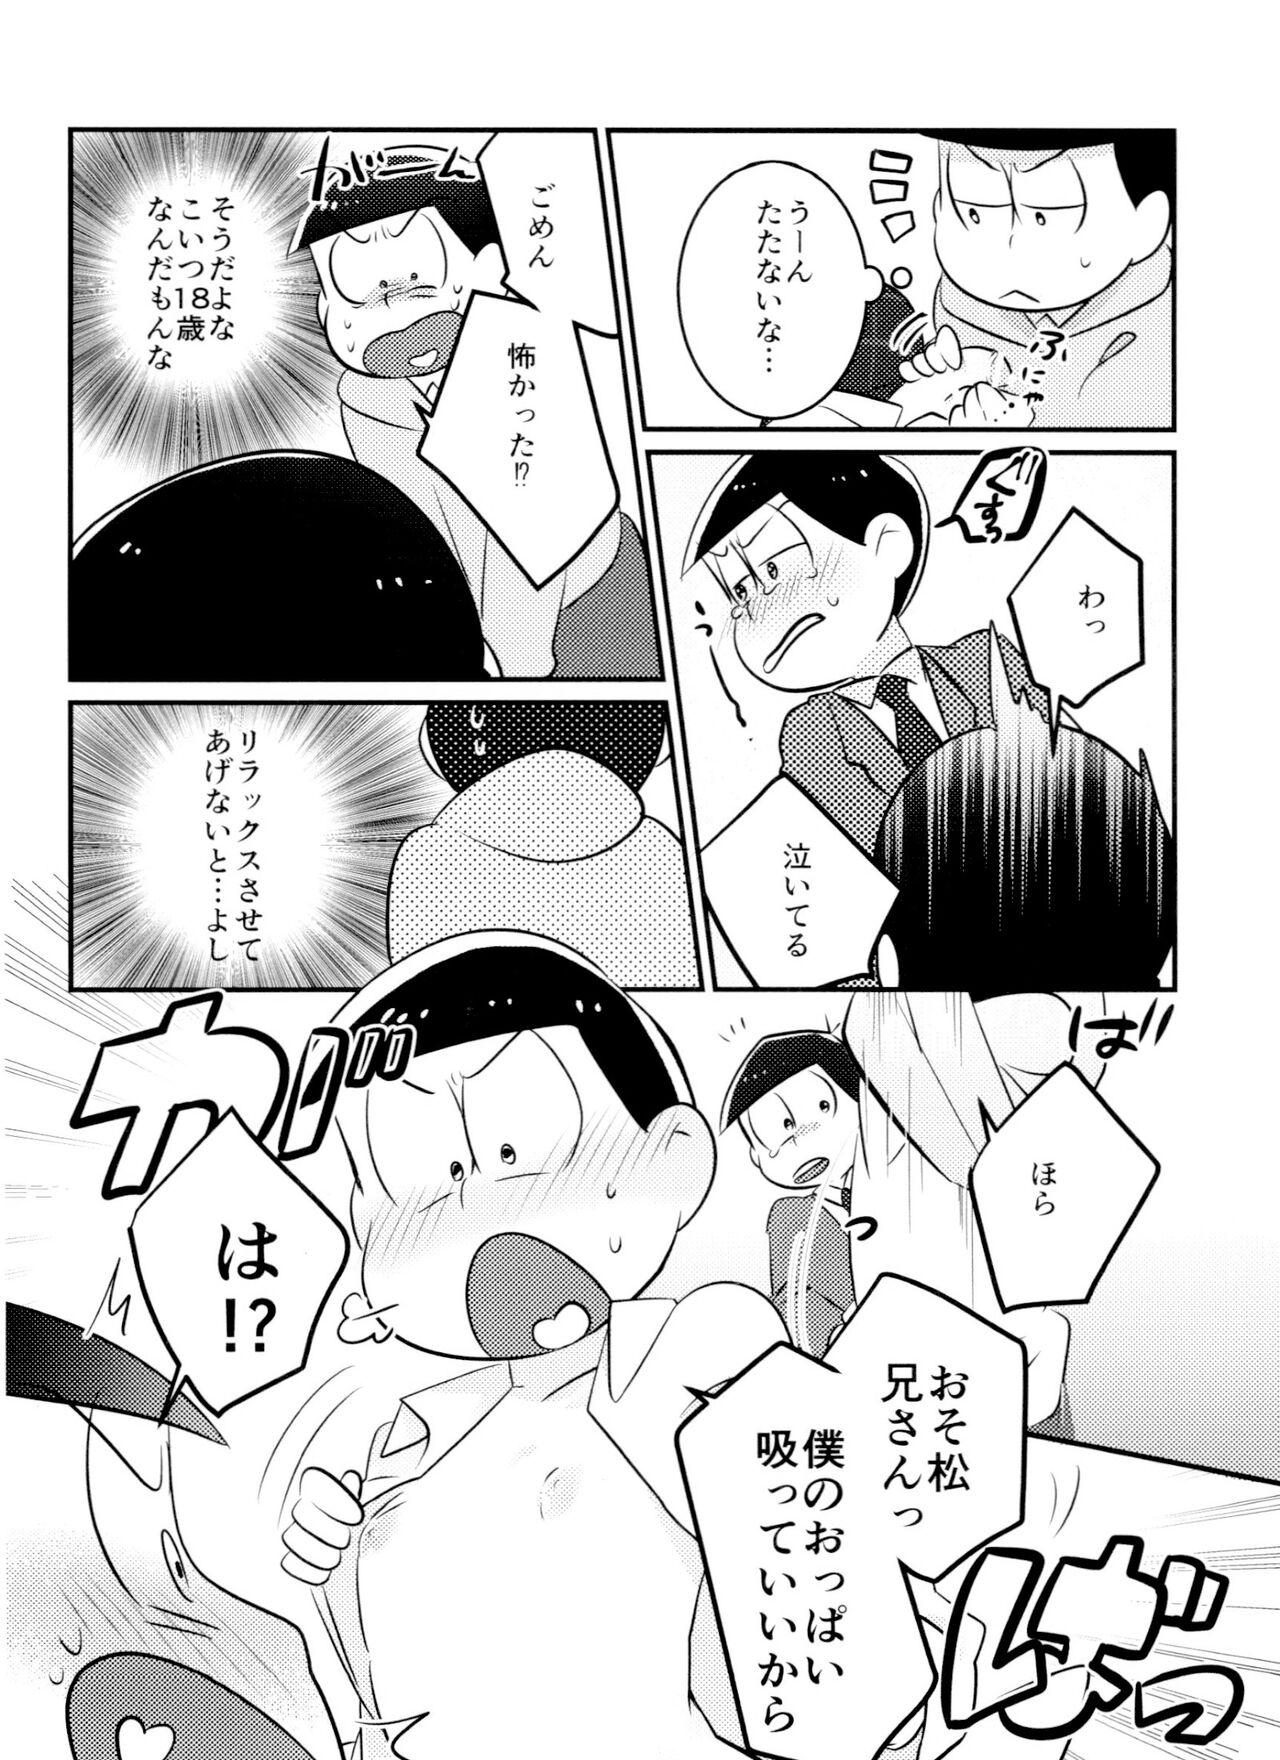 Vergon Kimi wa itsu kara otonana no!? - Osomatsu-san Cousin - Page 9